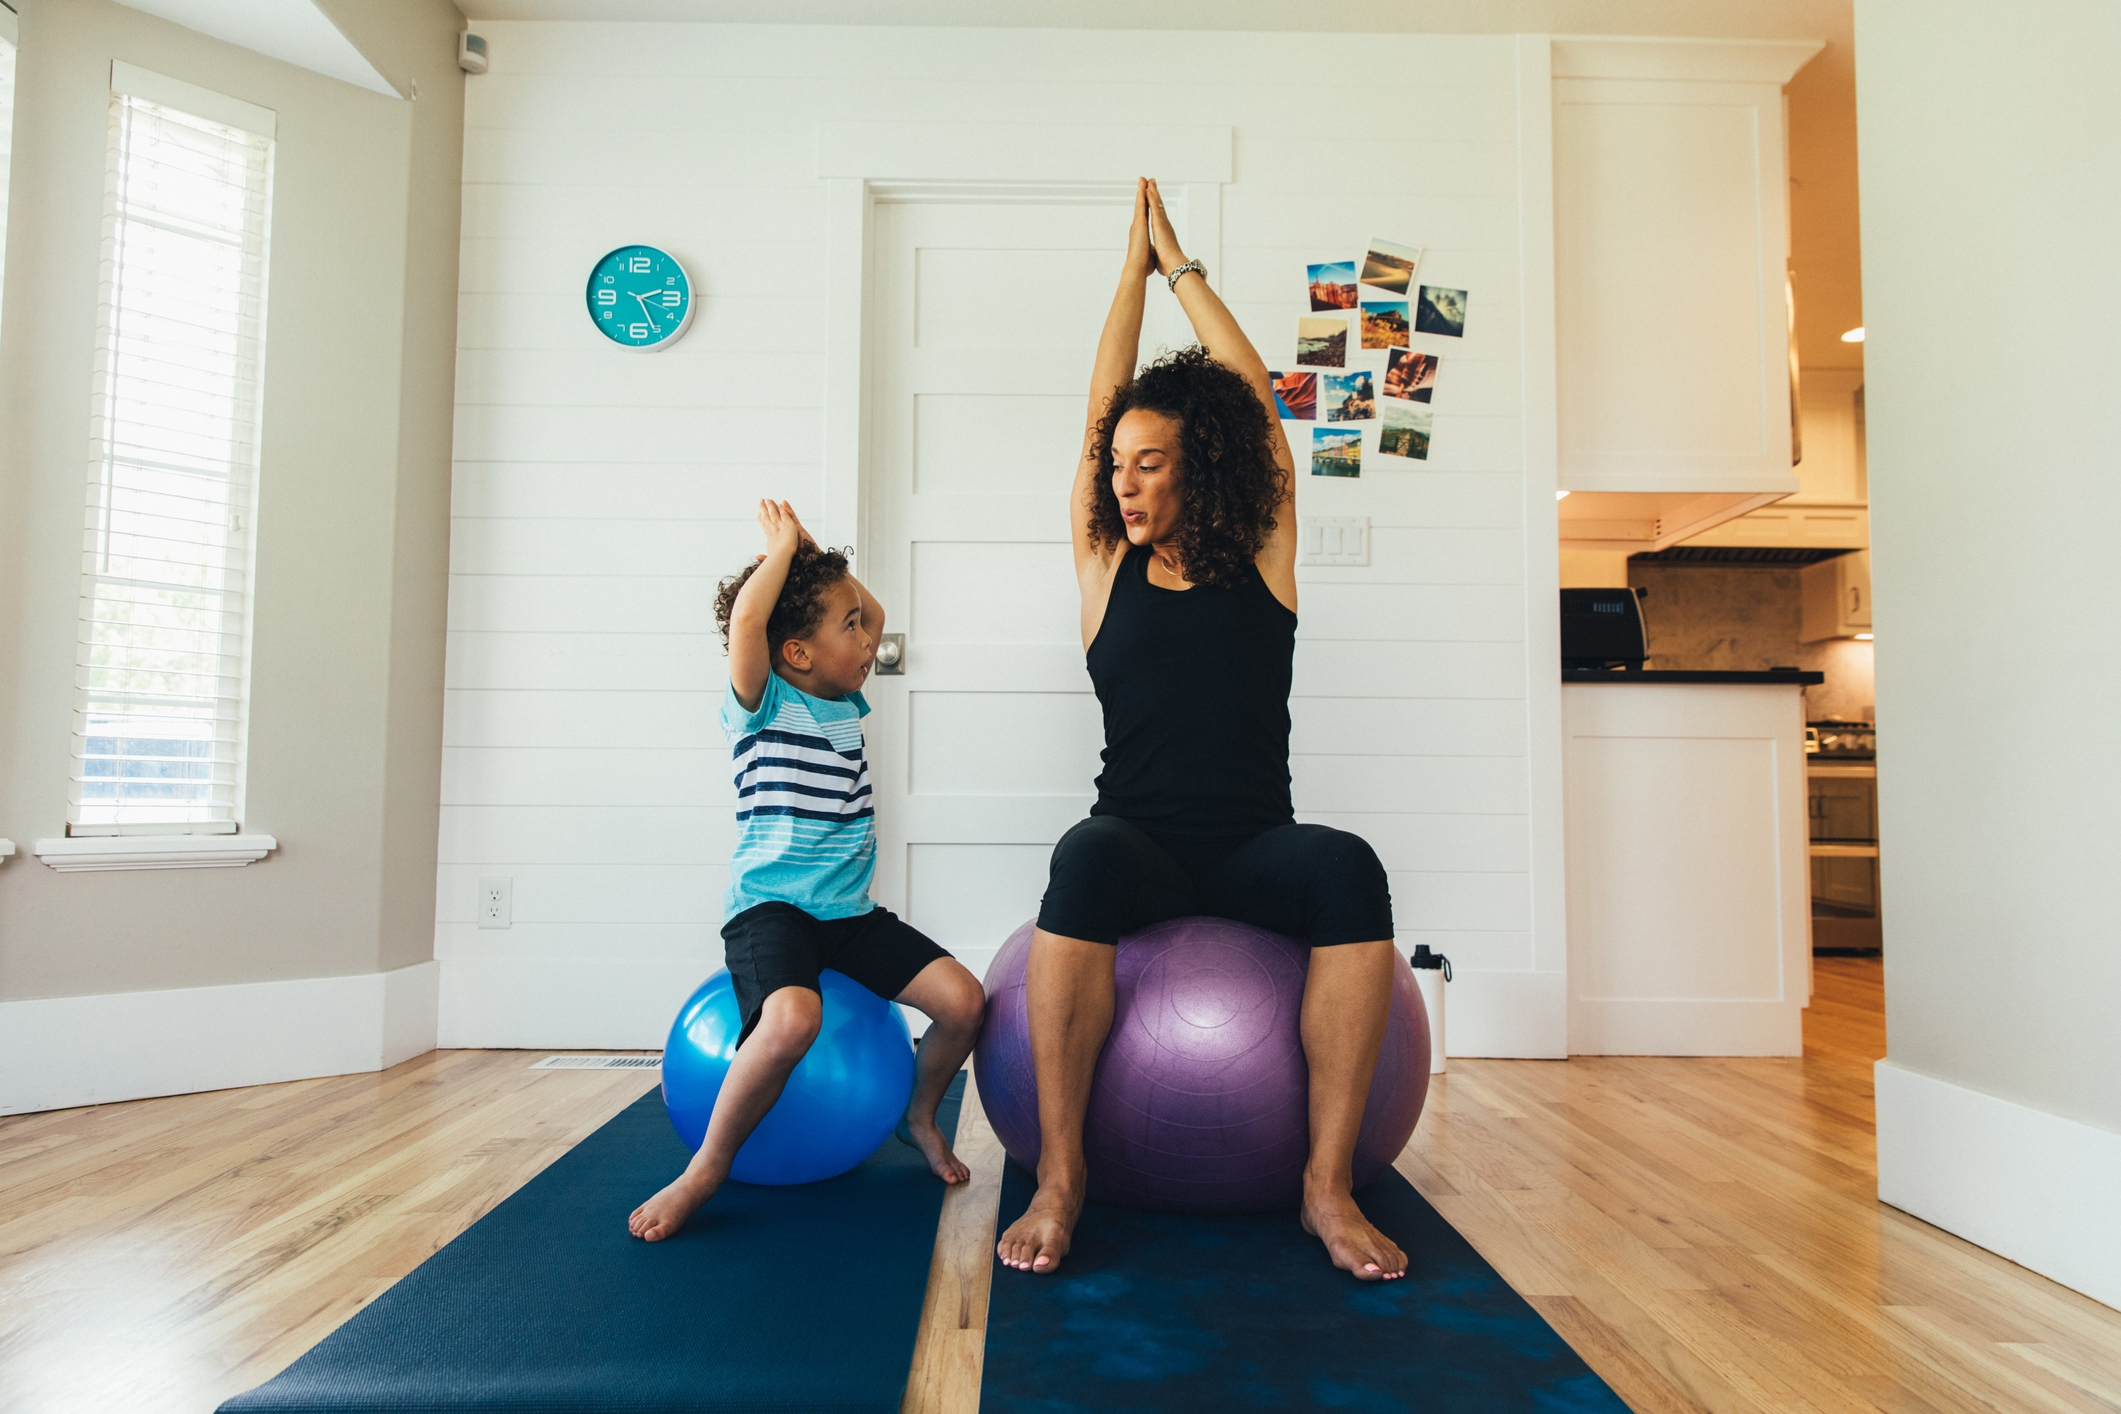 Una madre hace ejercicio sobre una pelota de gimnasio con su hijo pequeño dentro de su casa. Ella enseña al niño la importancia de un estilo de vida saludable a través de estiramientos y ejercicios apropiados.